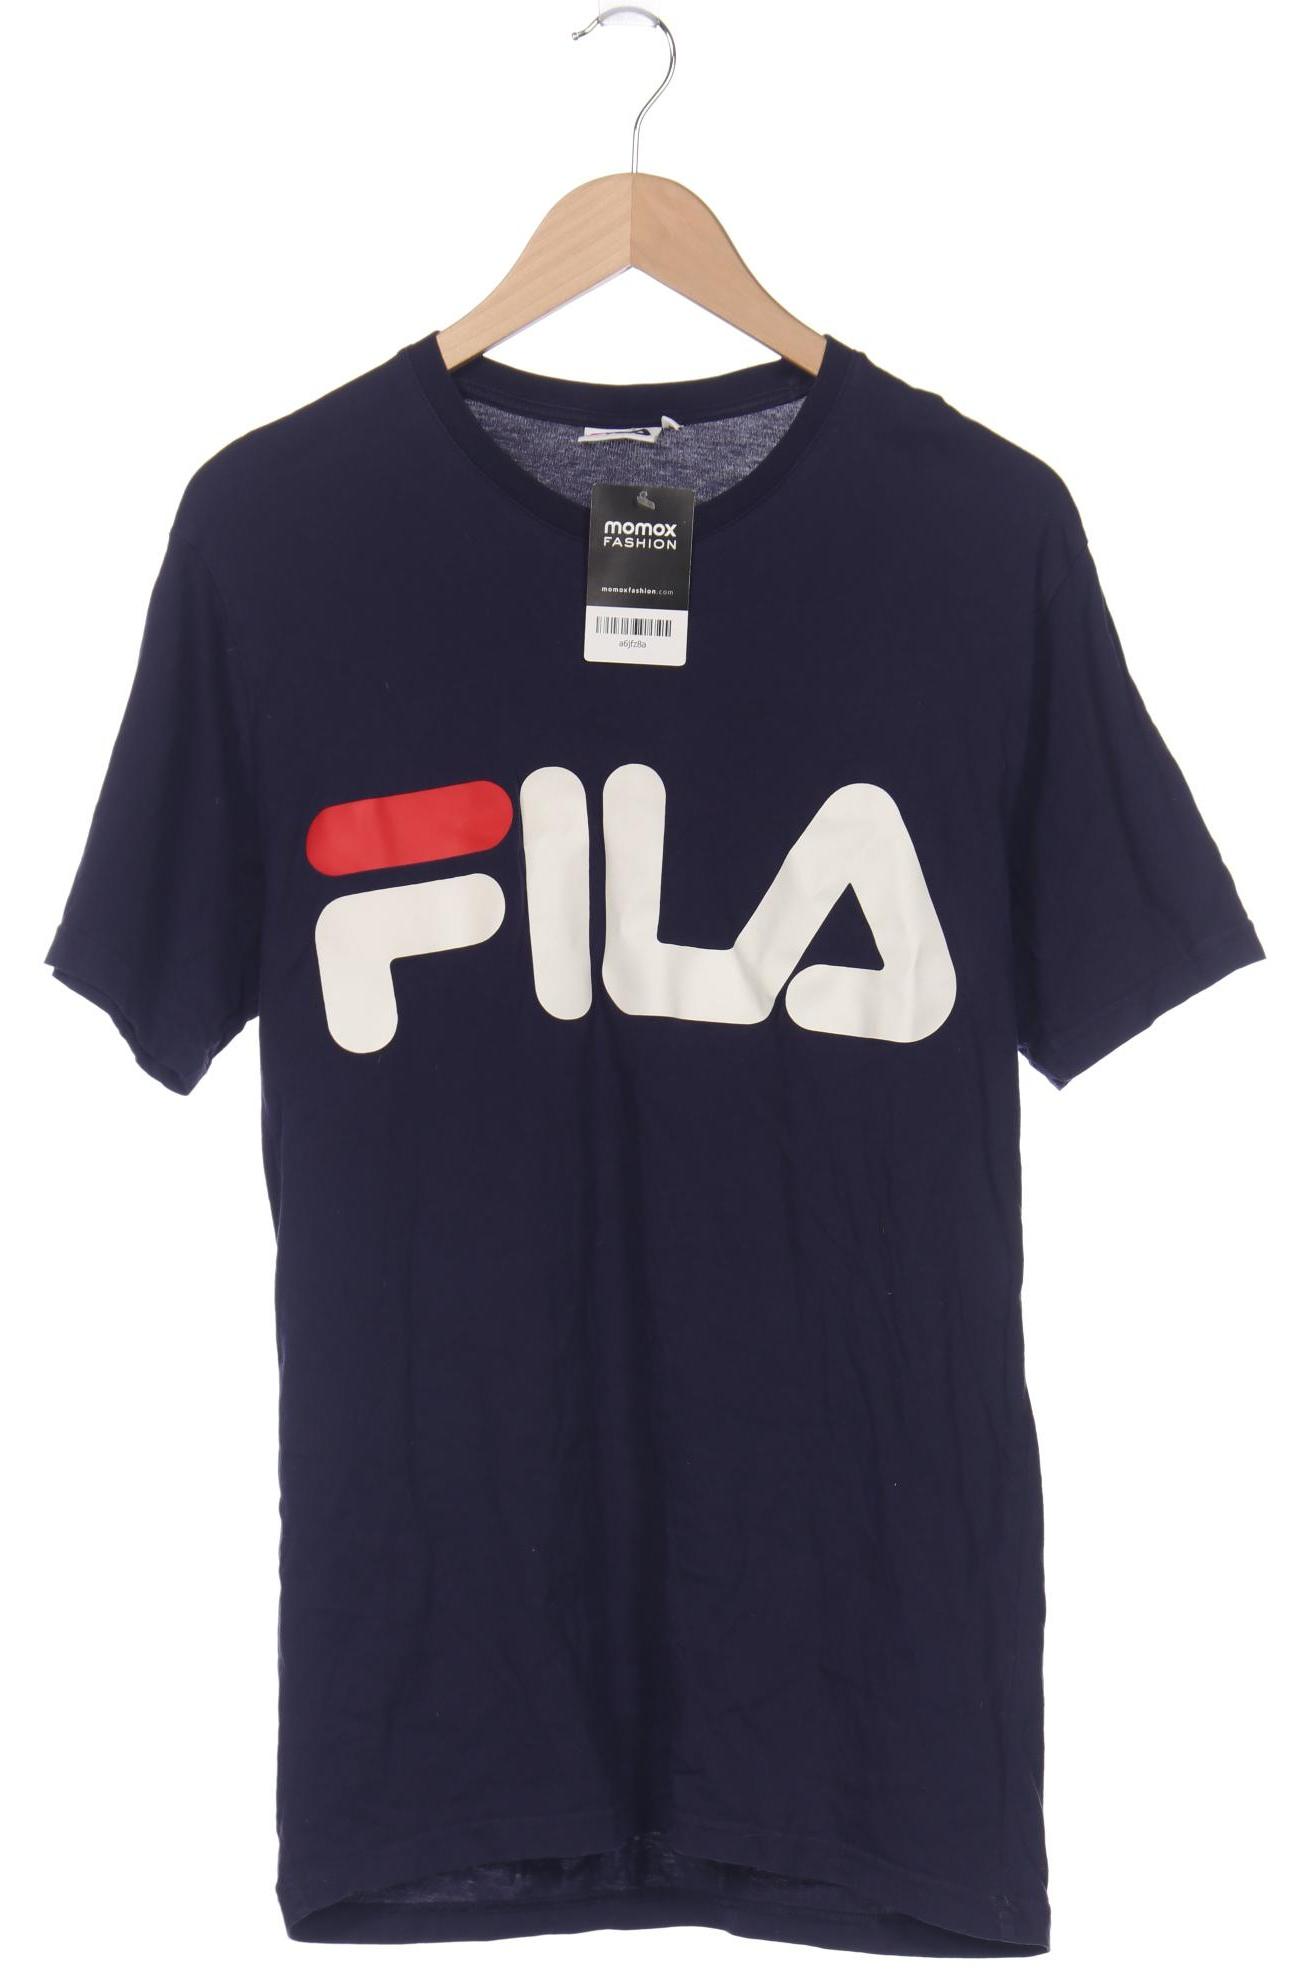 FILA Herren T-Shirt, marineblau von Fila